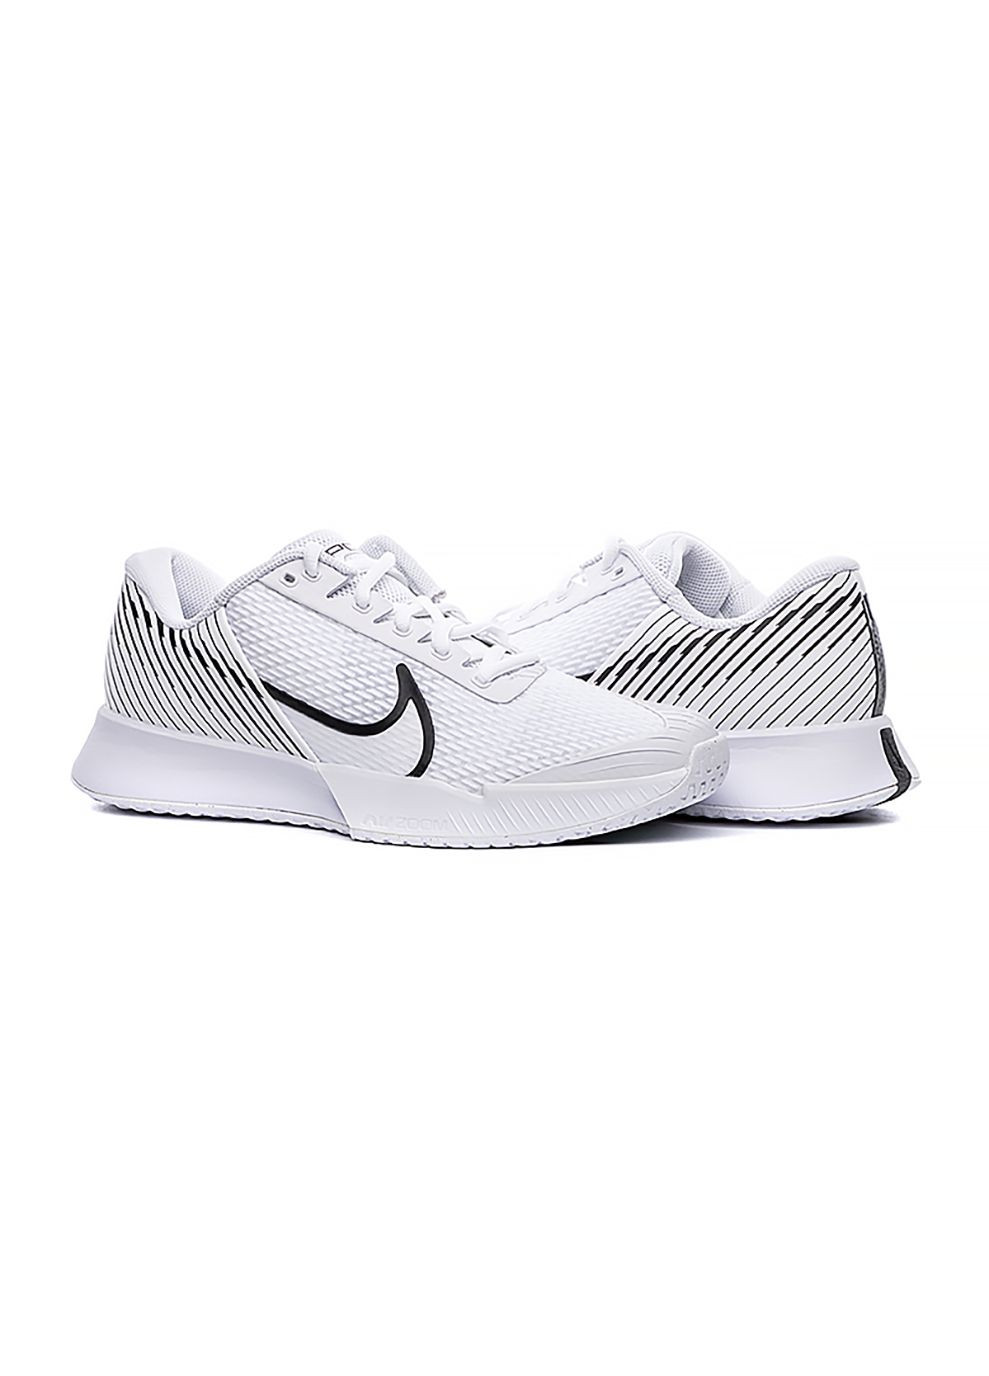 Білі всесезонні жіночі кросівки zoom vapor pro 2 hc білий Nike